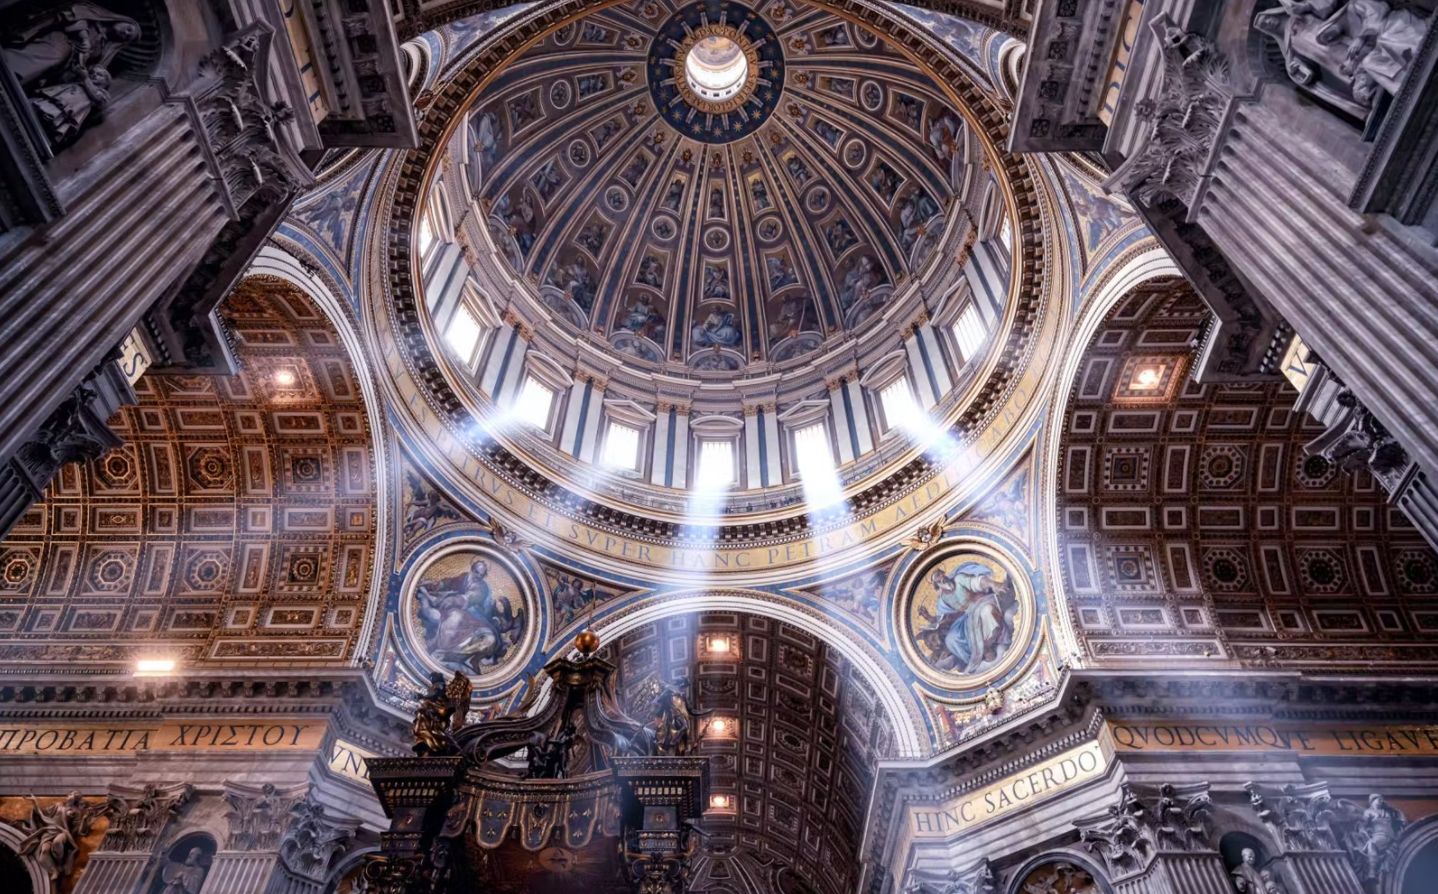 Vương cung thánh đường Thánh Peter với ánh sáng tán xạ đẹp mắt xuống nội thất bên dưới